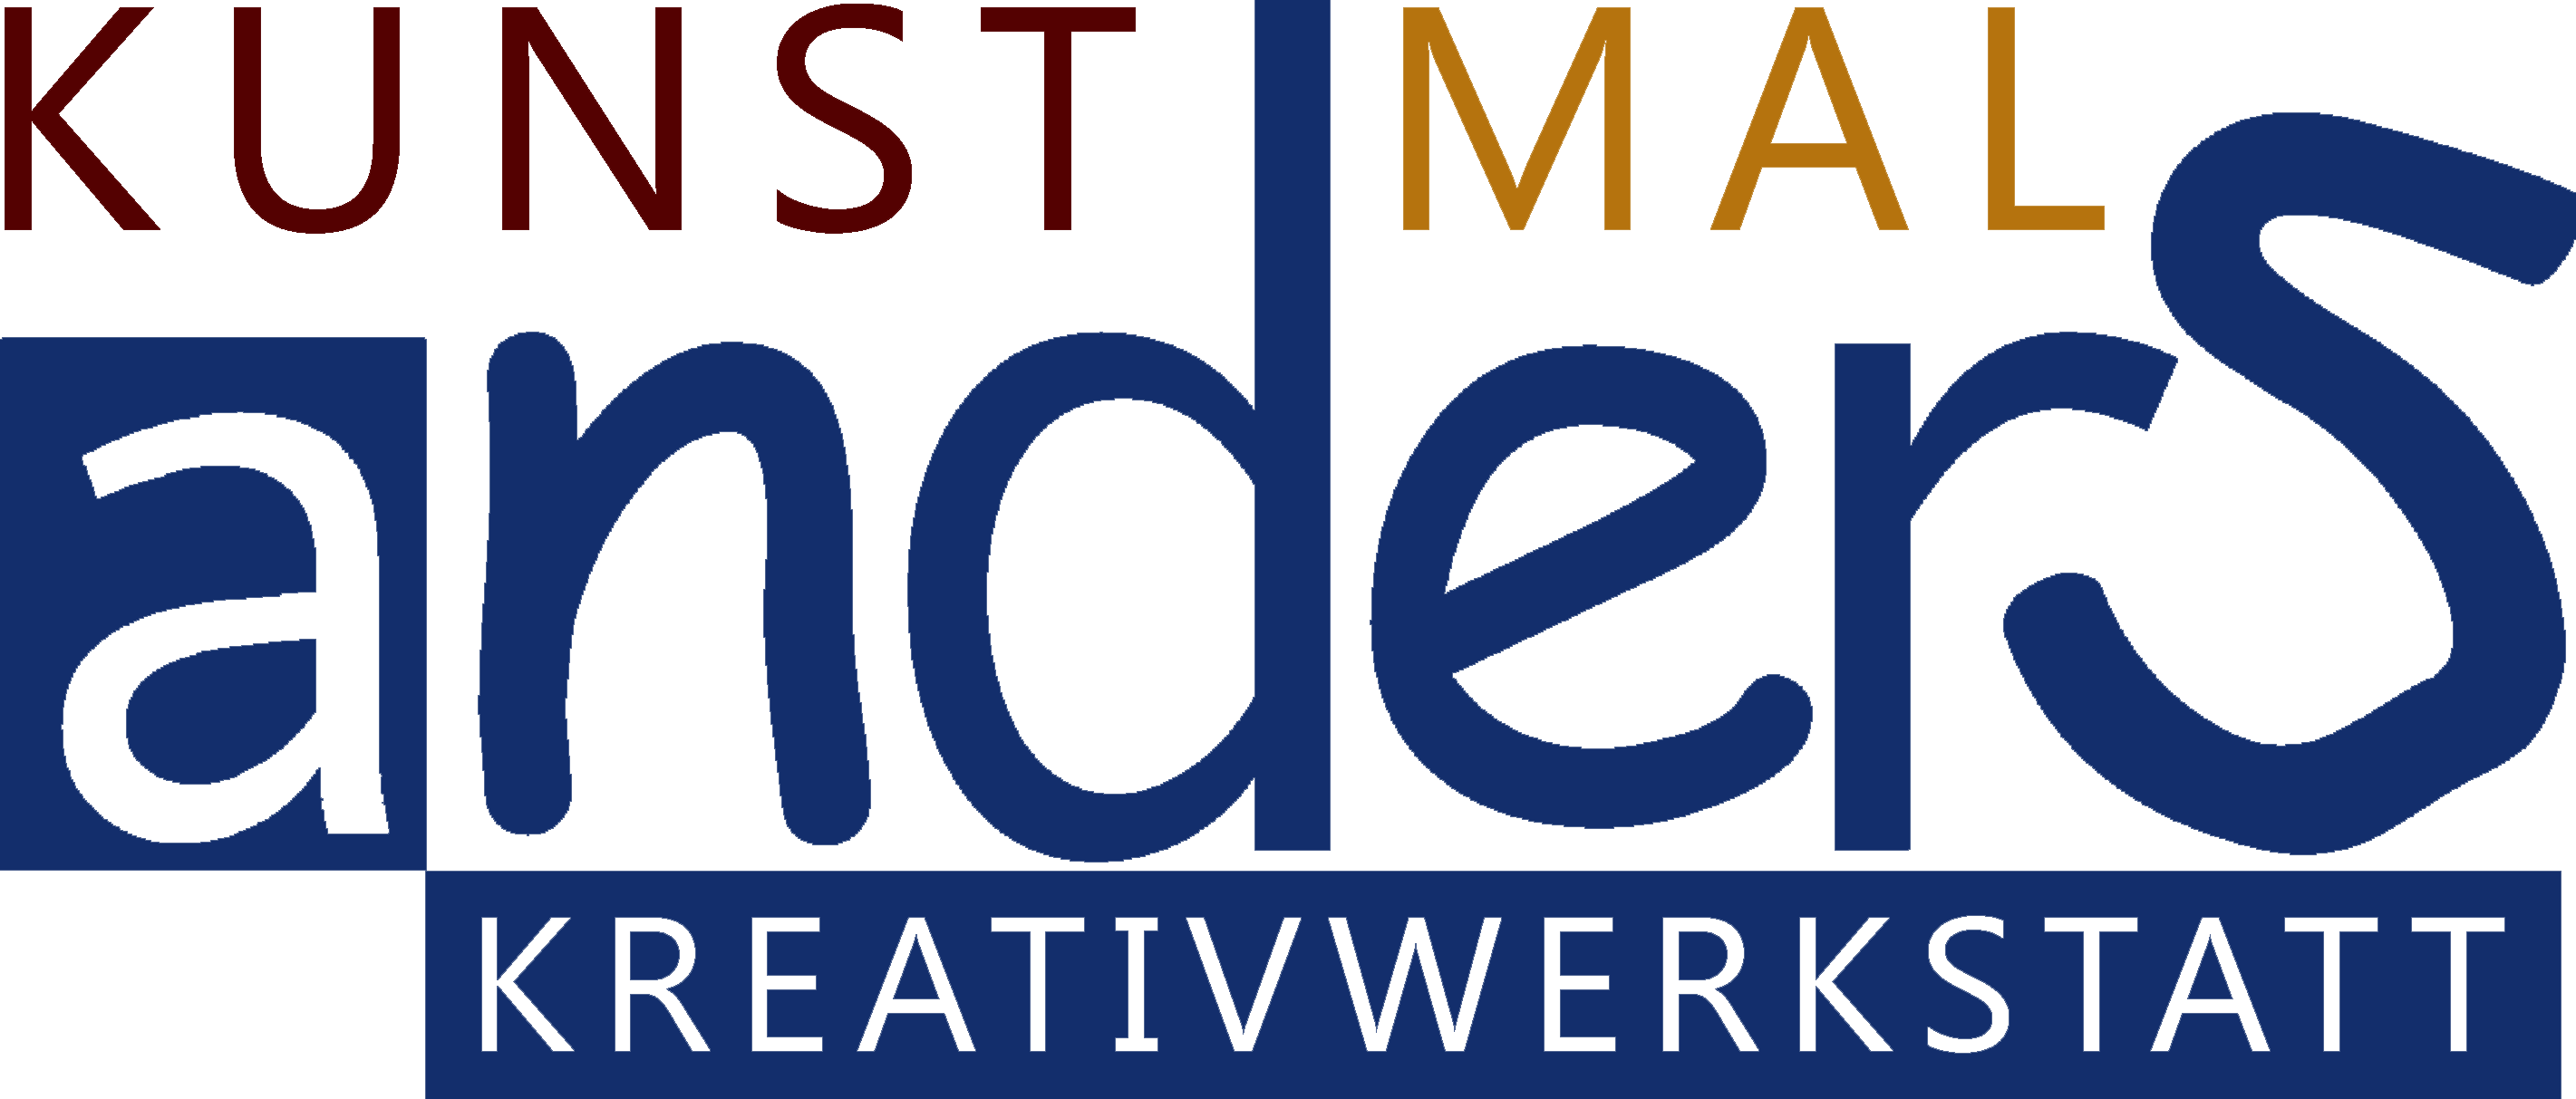 Kunst mal anders - Kreativwerkstatt und private Malschule logo